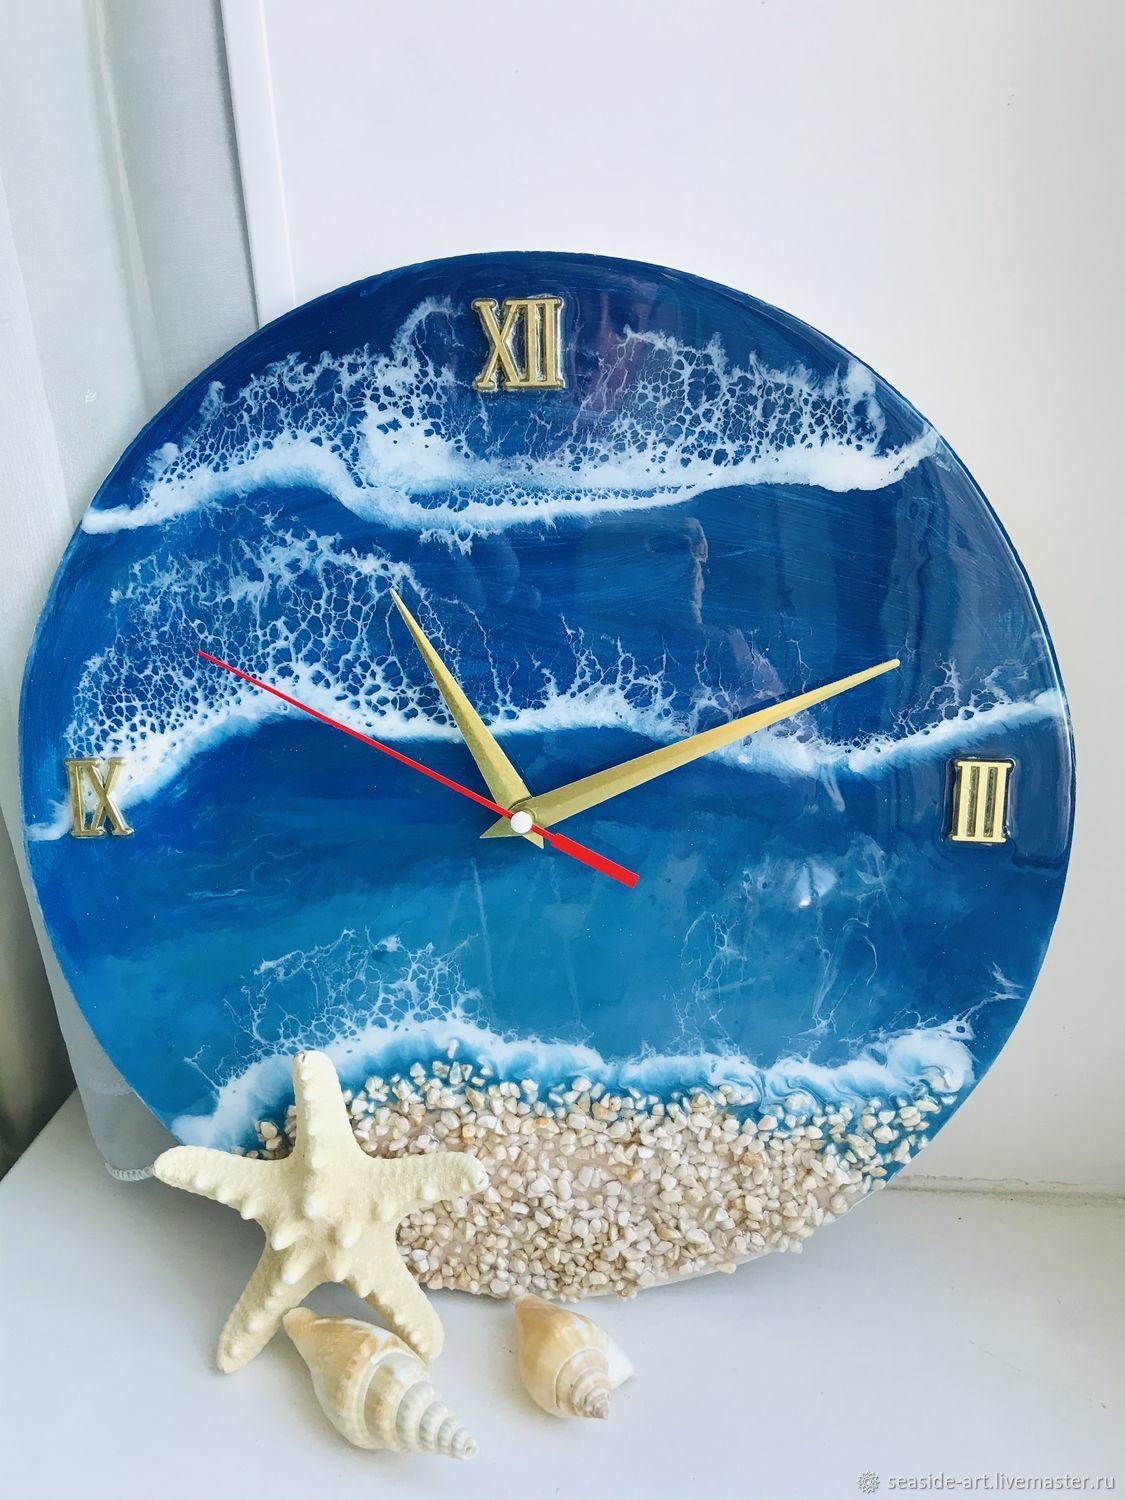 Морские часы настенные. Часы в морском стиле настенные. Часы морская тематика. Часы настенные морская тематика. Декор часов в морском стиле.